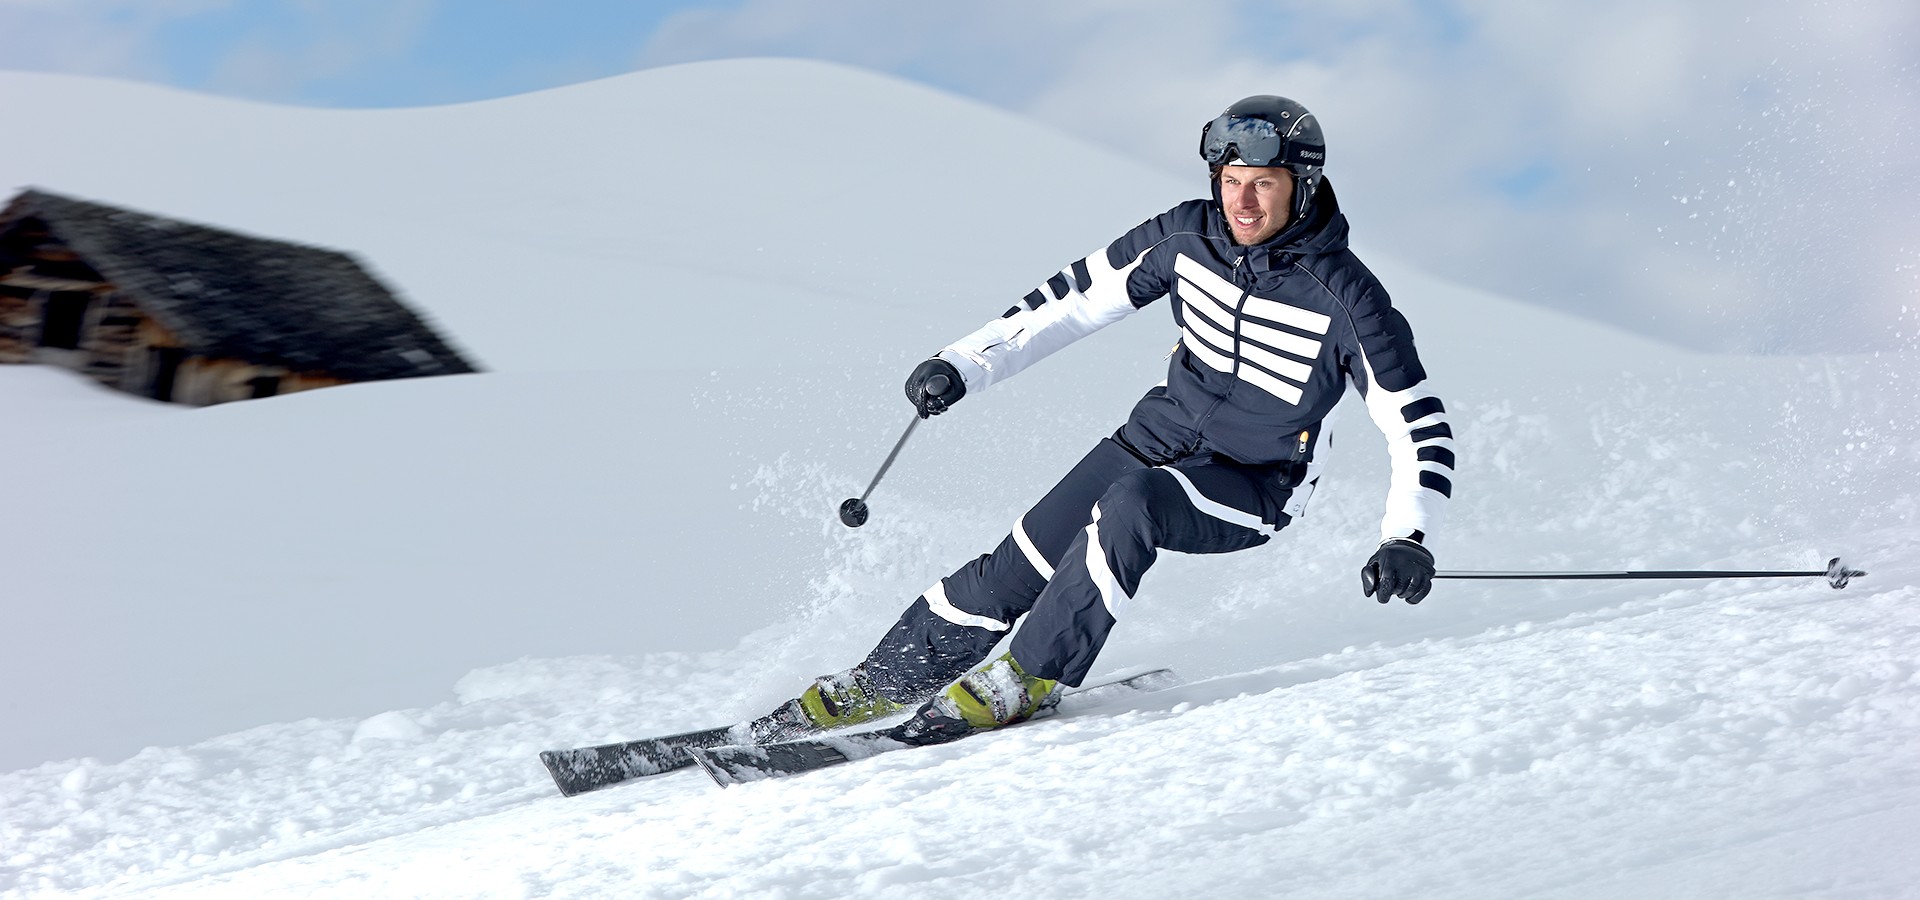 Vetements de skis, Vetements homme, femme pour le ski